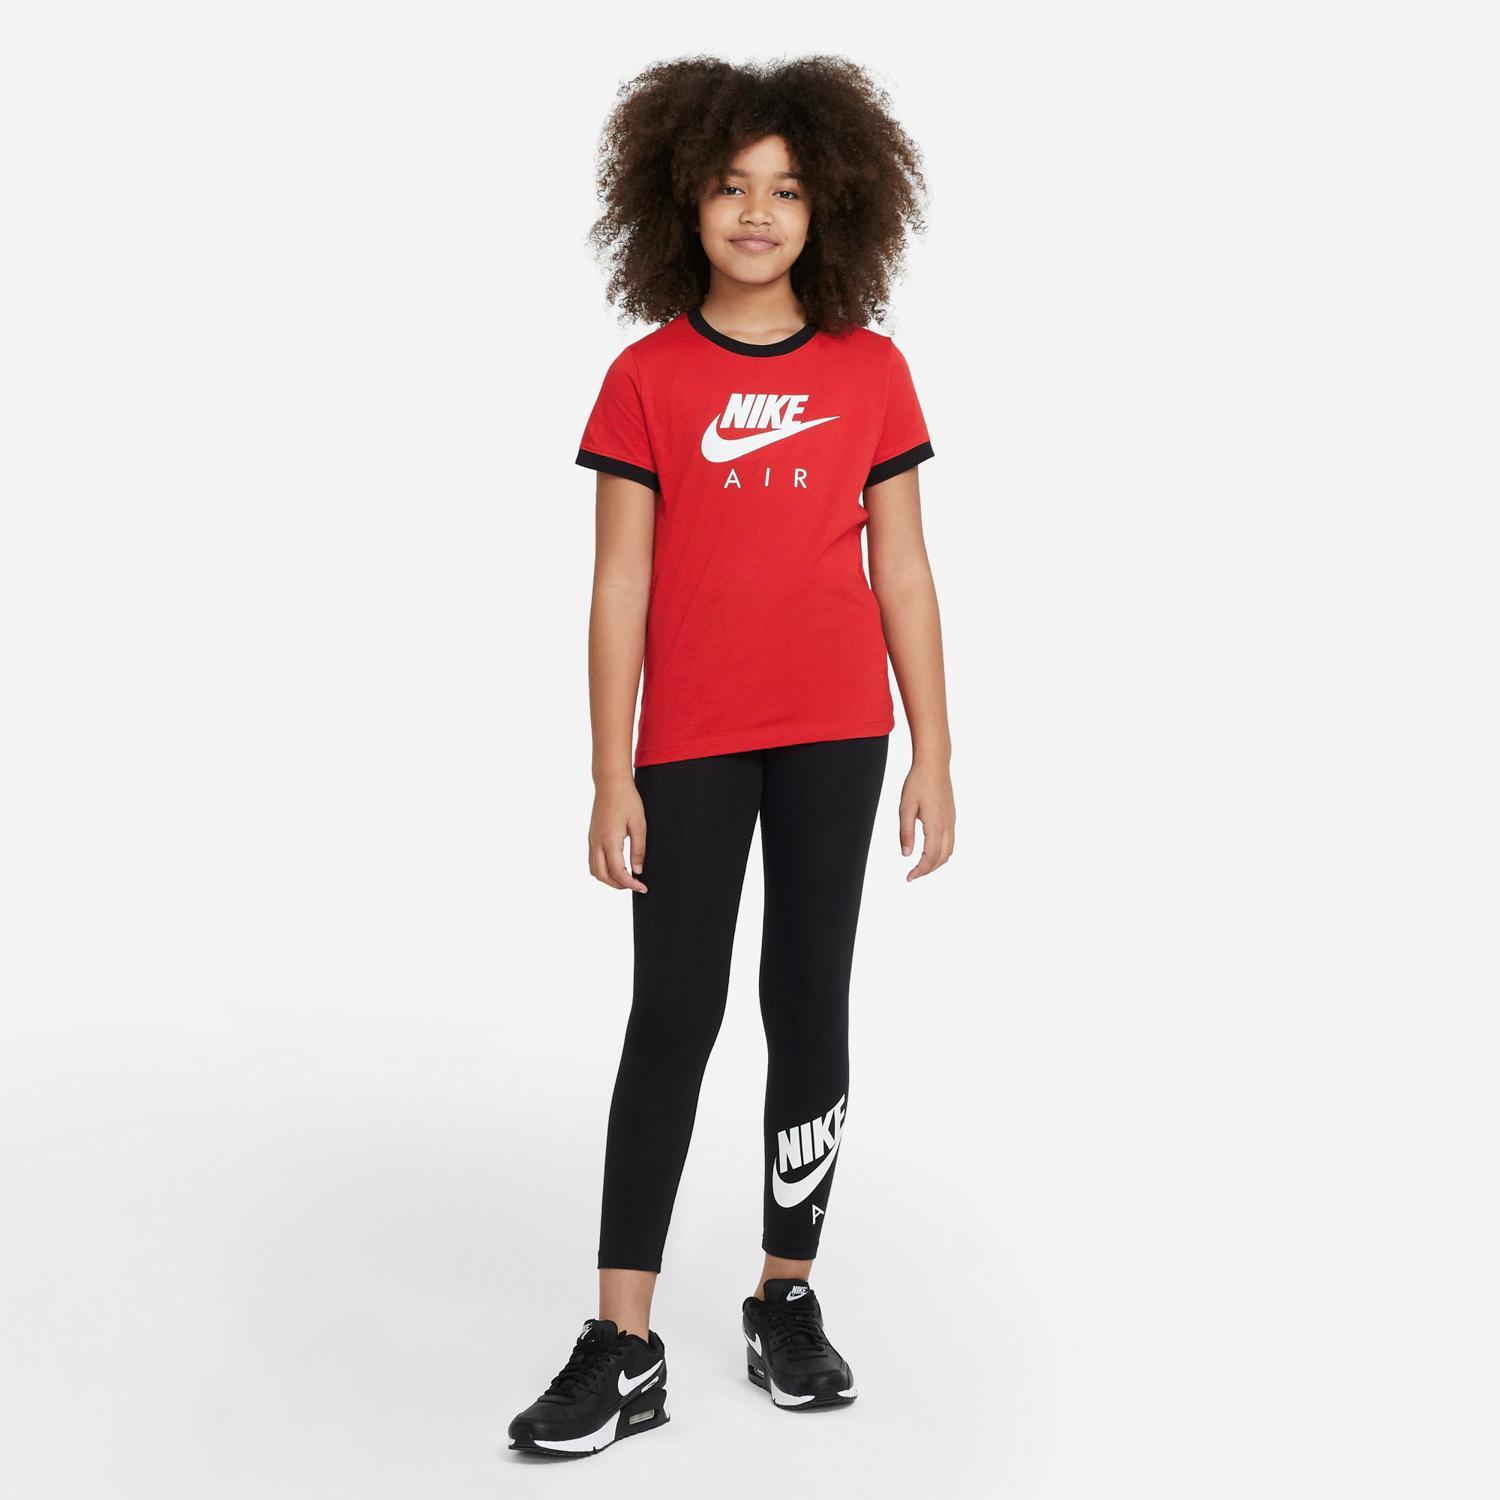 T-shirt  Air - Vermelho - T-shirt Rapariga tamanho 16